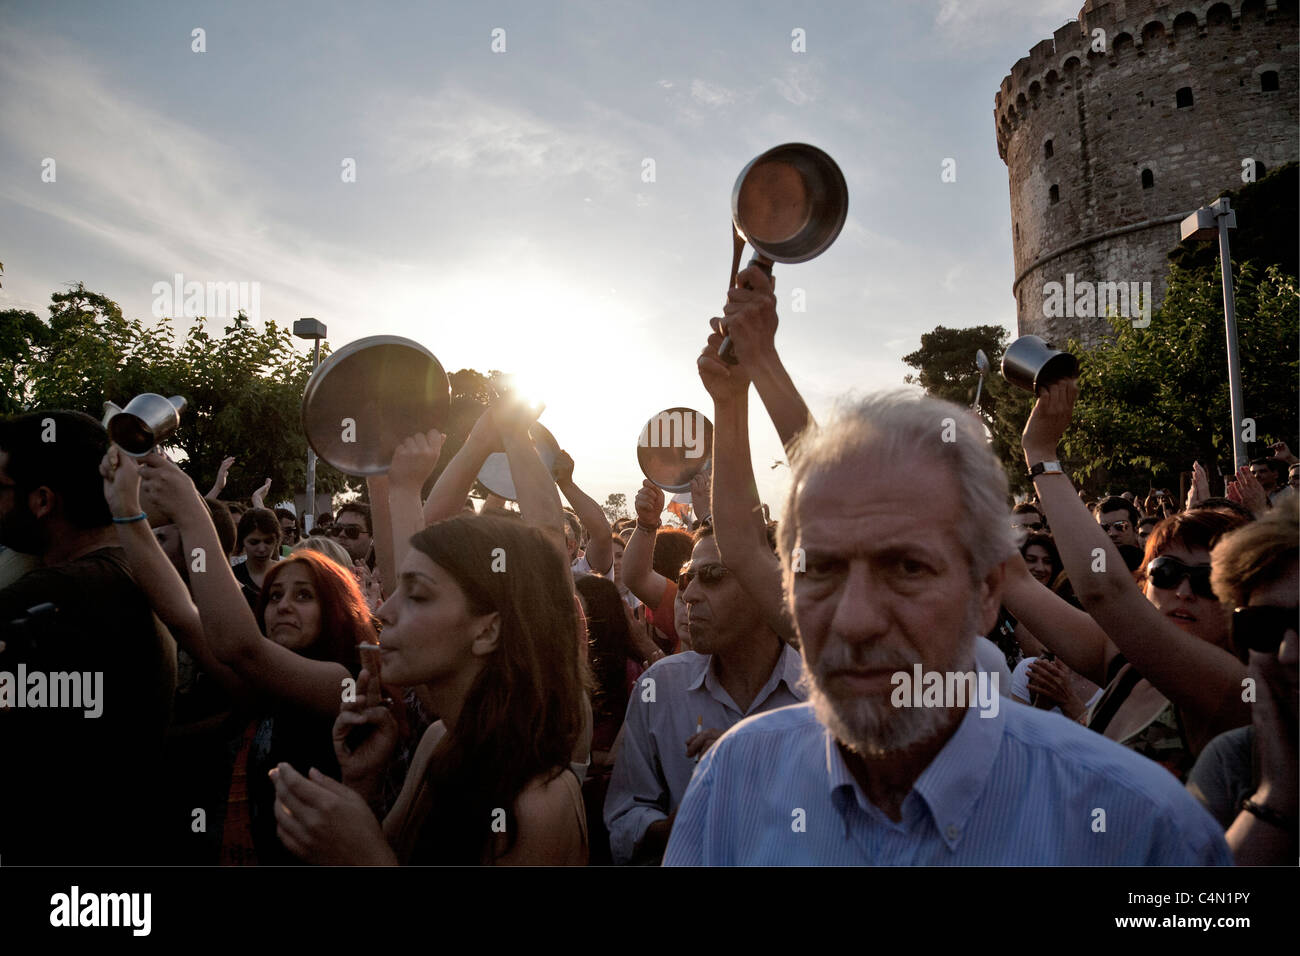 Demonstranten schreien und versuchen, in jeder Weise Hämmern Töpfe und Pfannen Lärm zu machen. Thessaloniki, Griechenland. Stockfoto